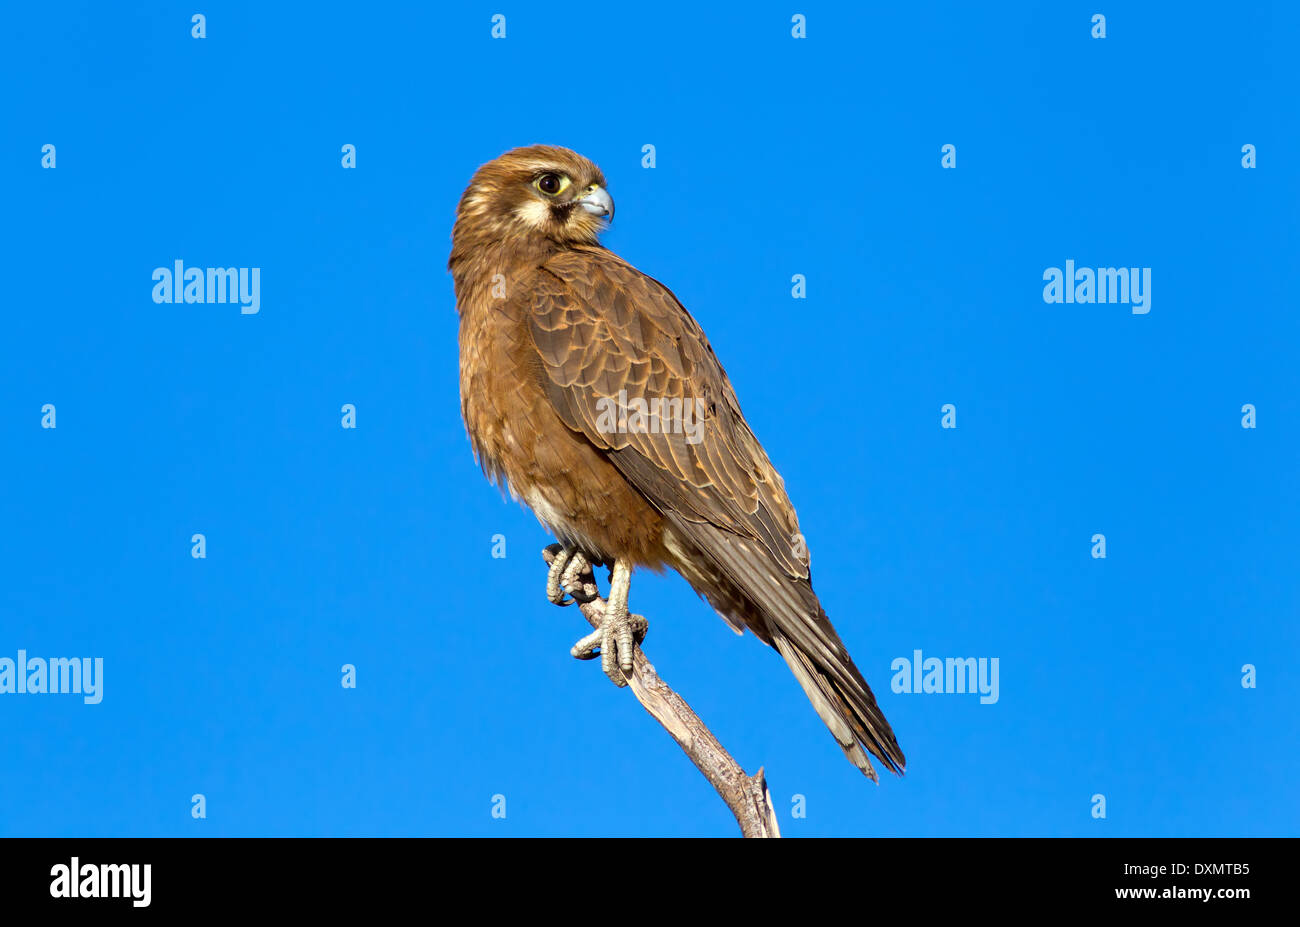 Brown falcon oiseau de proie raptor de la faune de l'Australie Centrale australienne West McDonnell varie perché sur une branche d'arbre mort Banque D'Images